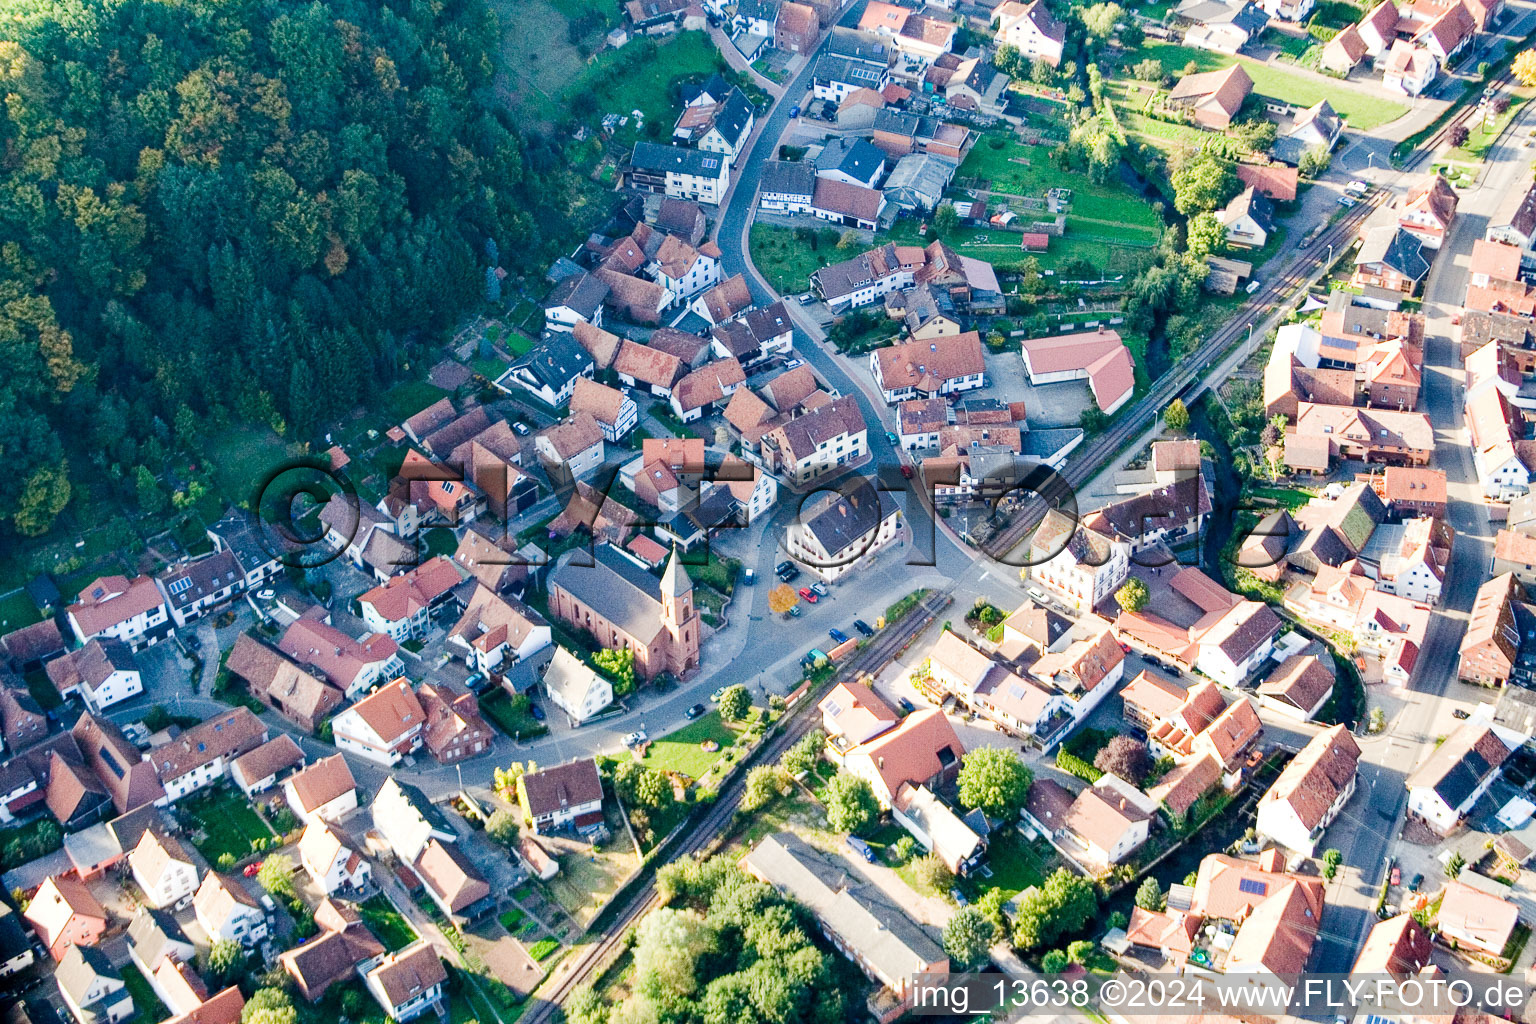 Luftbild von Ortsansicht der Straßen und Häuser der Wohngebiete in Bruchweiler-Bärenbach im Bundesland Rheinland-Pfalz, Deutschland